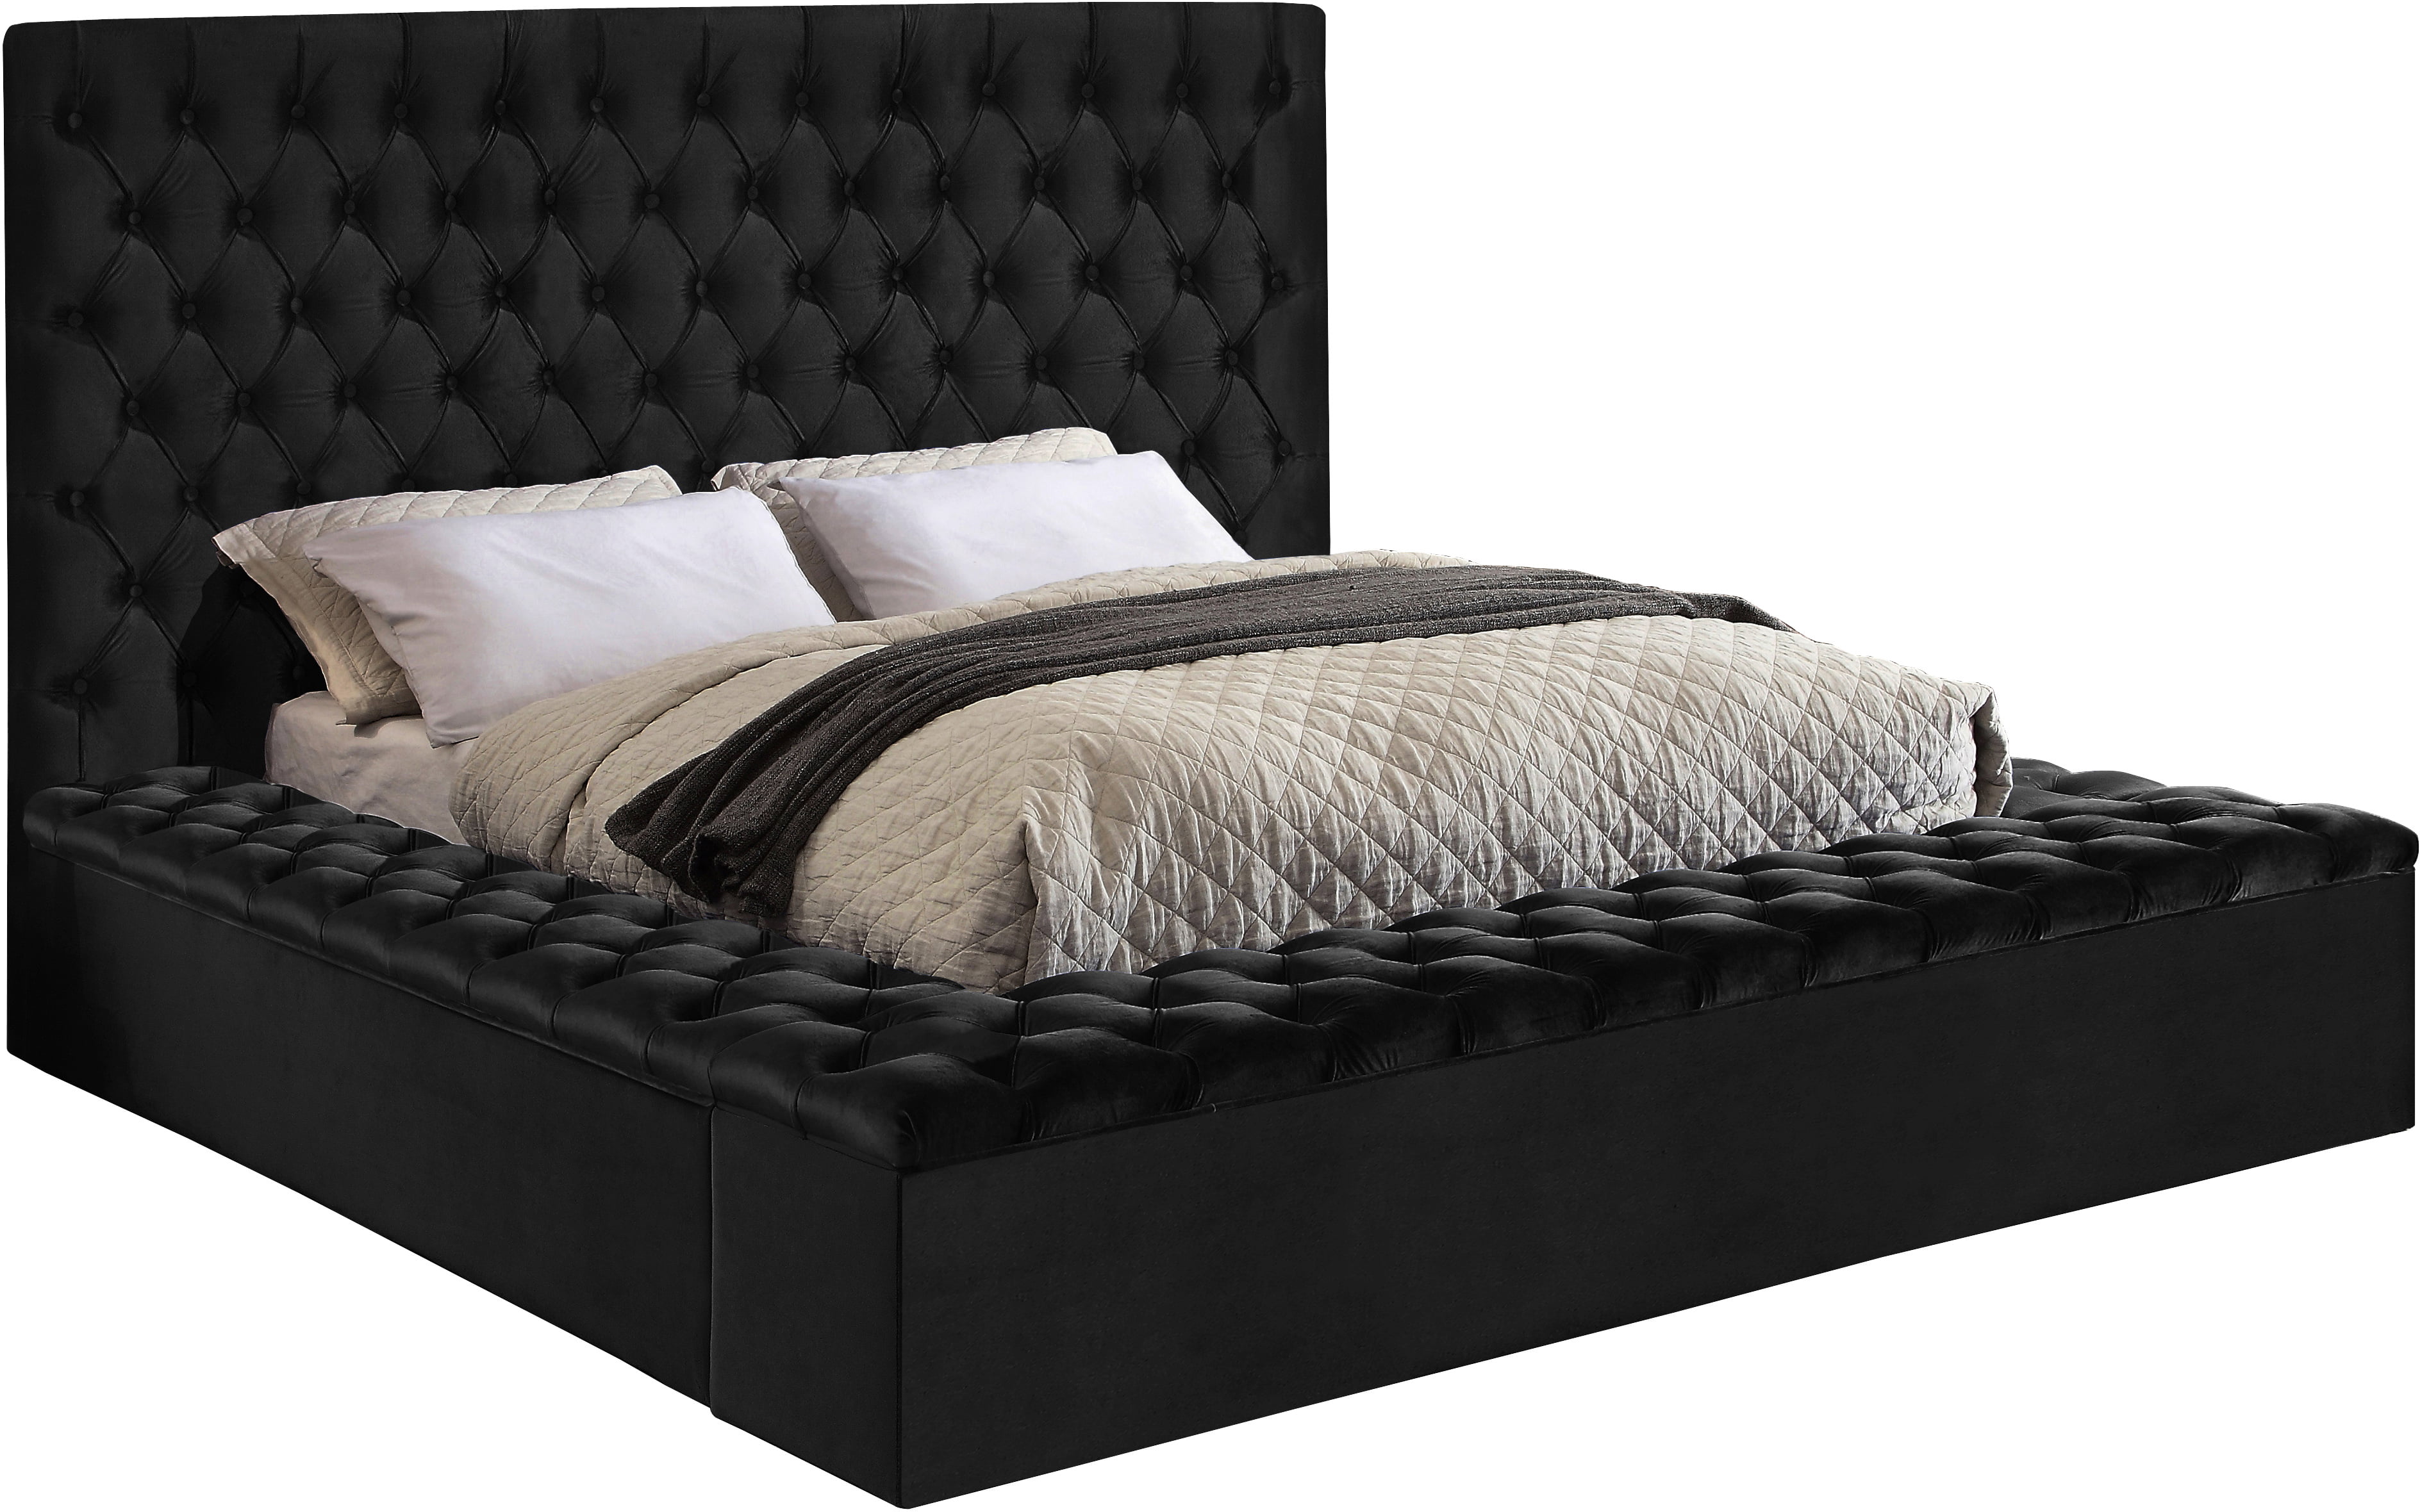 Meridian Furniture Bliss Velvet Queen Bed Box Of 3 Colorblack Velvetstylecontemporary 